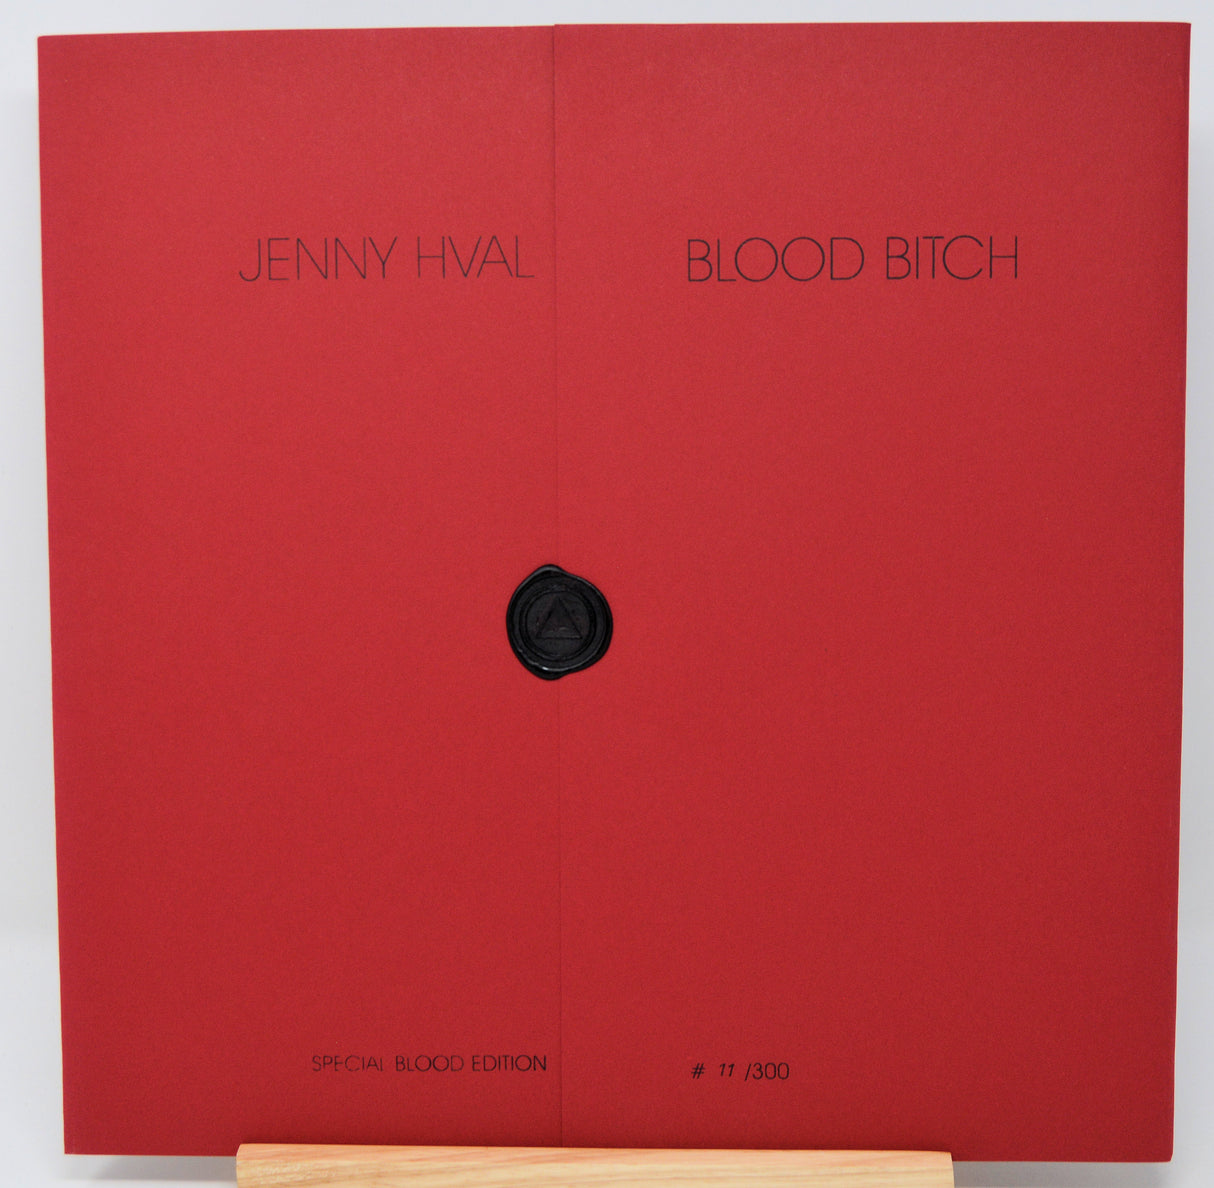 Hval, Jenny - Blood Bitch